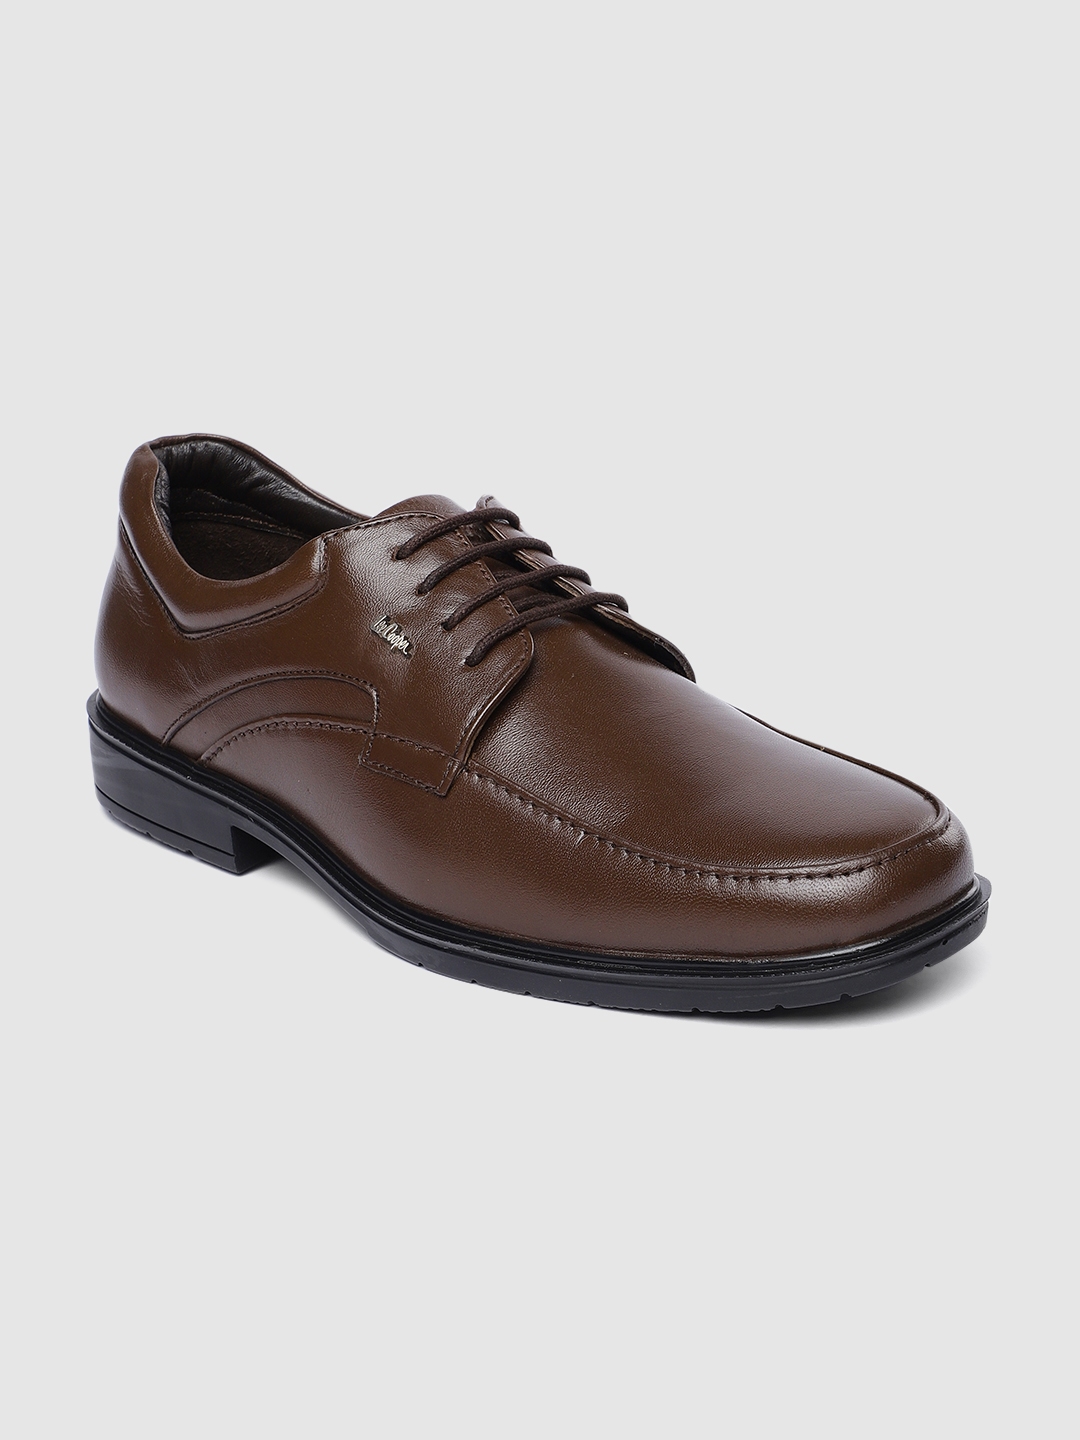 Buy Lee Cooper Men Brown Leather Formal Shoes - Formal Shoes for Men ...